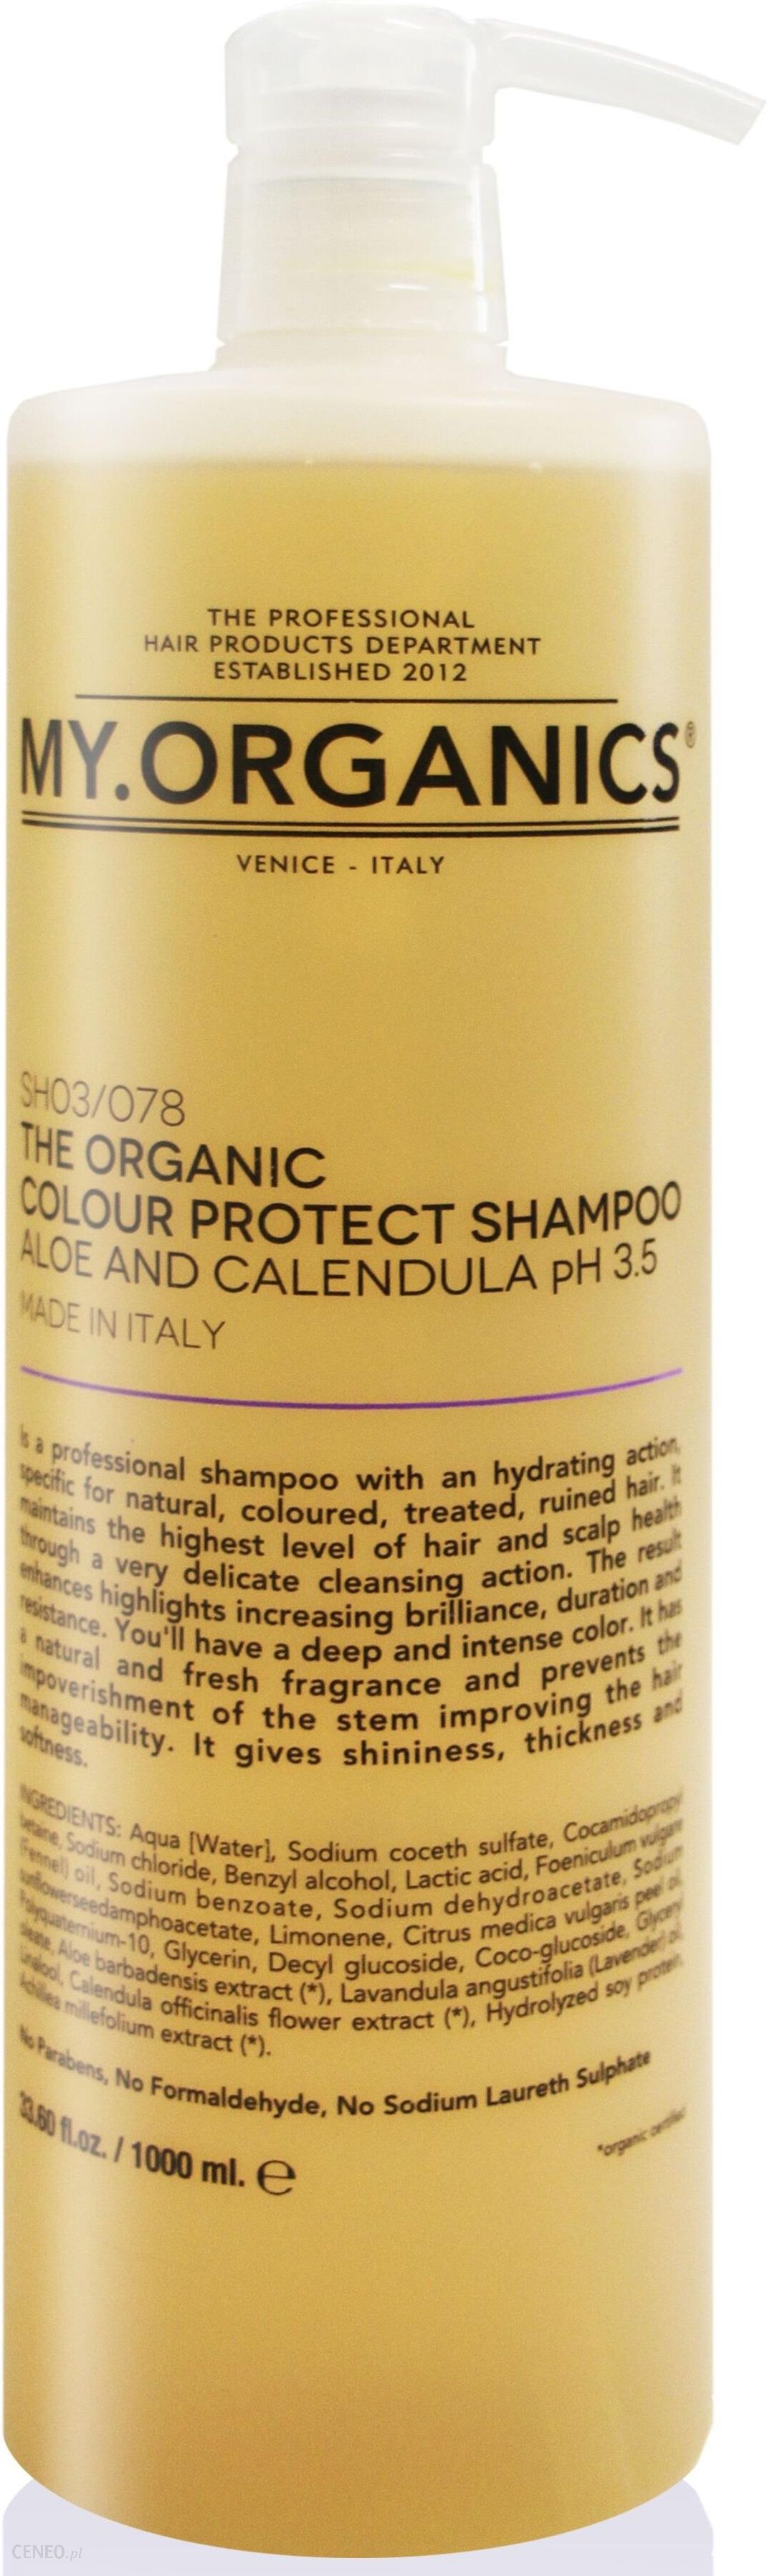 my organics szampon przeciw wypadaniu